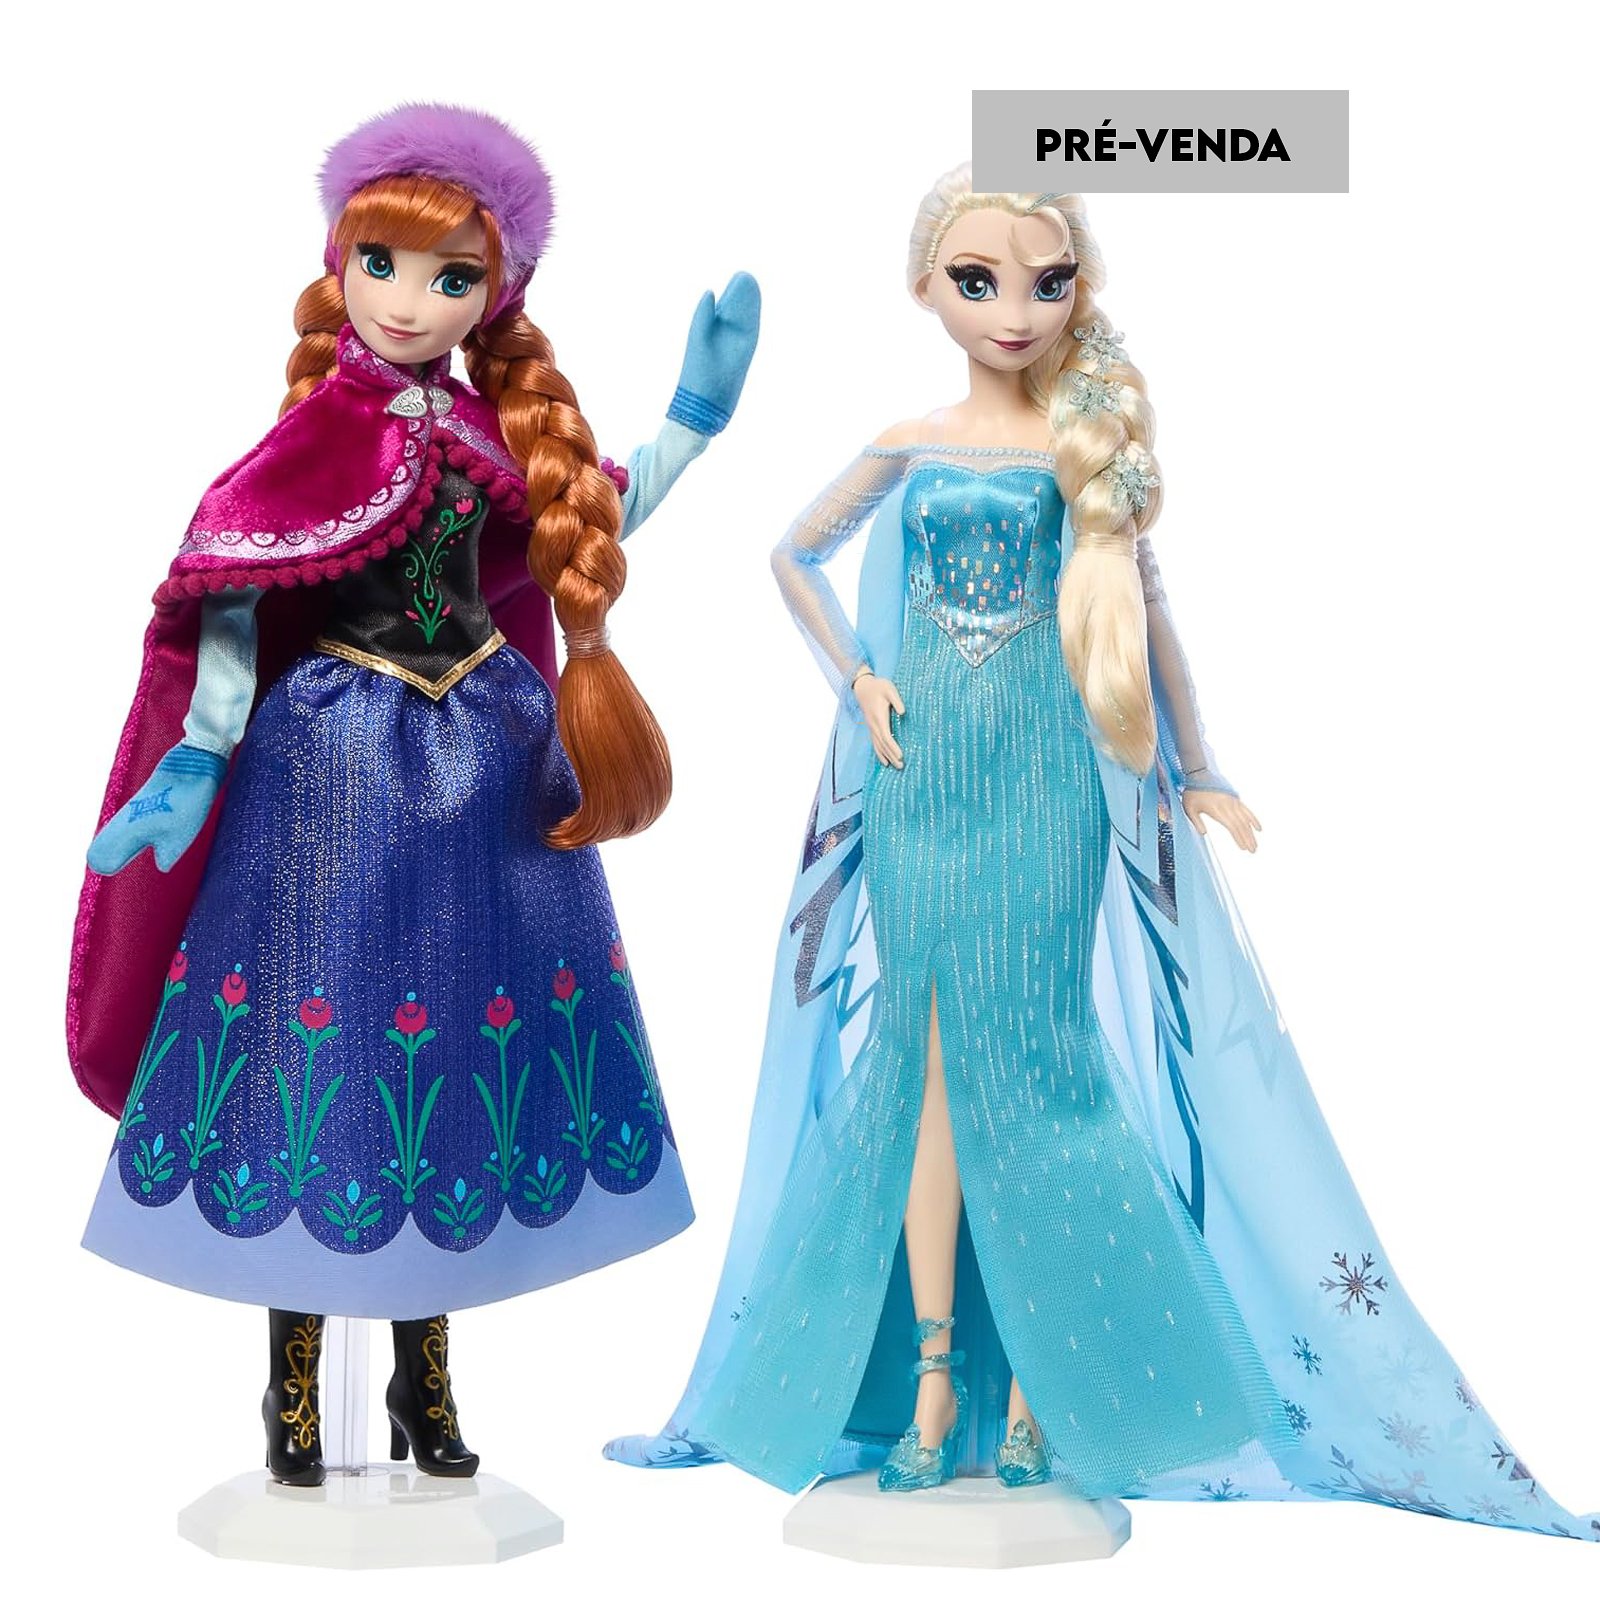 Boneca Frozen Elsa e Anna Promoção